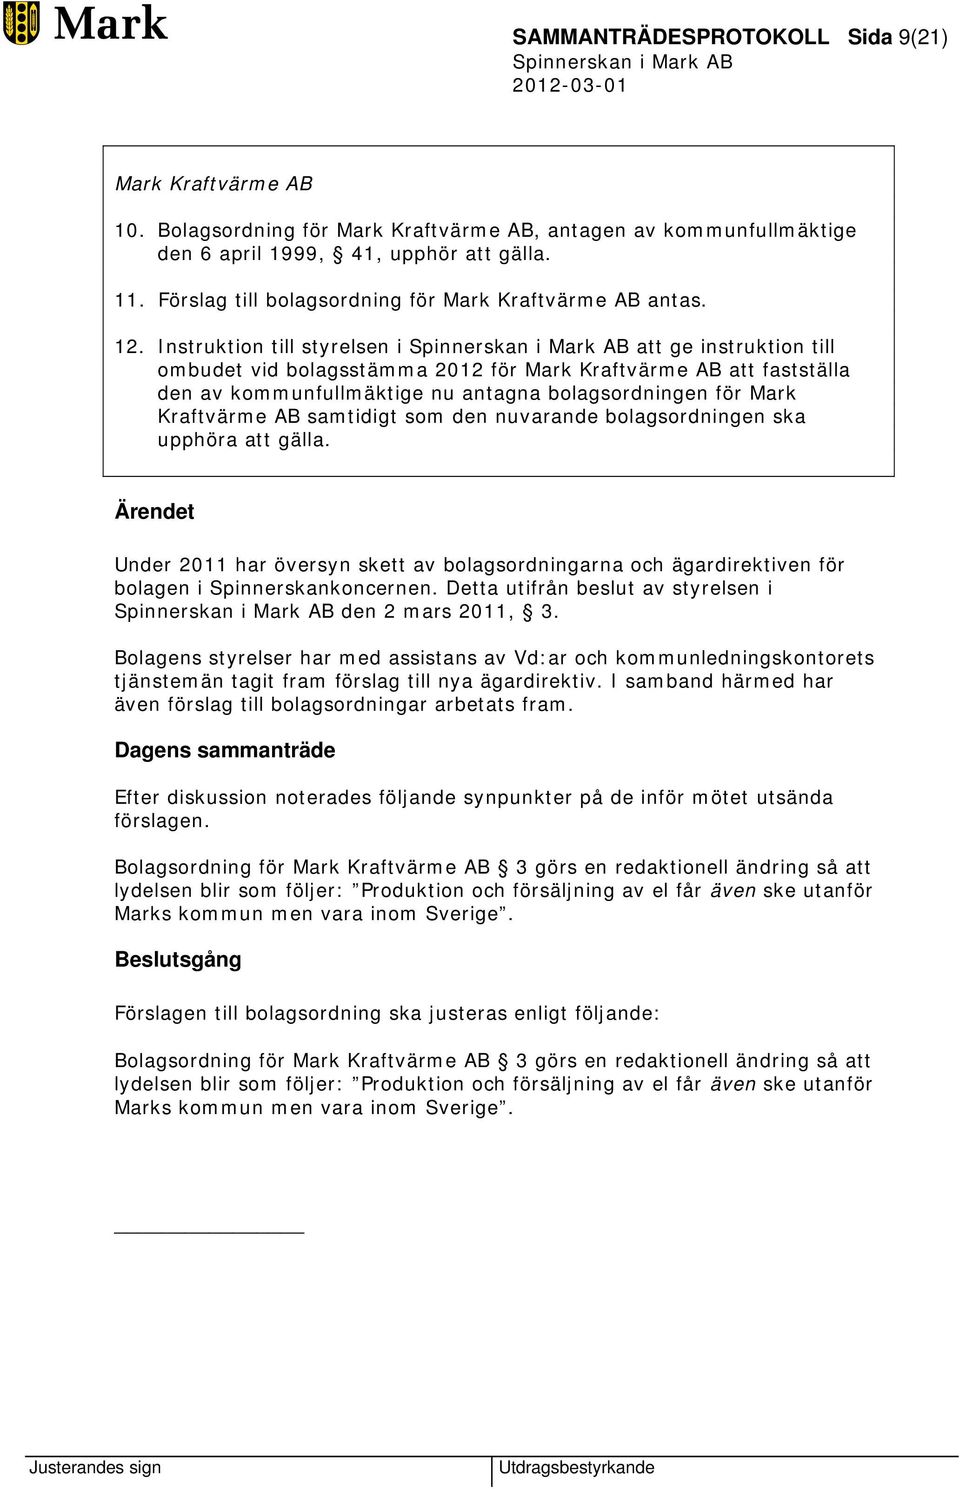 Instruktion till styrelsen i att ge instruktion till ombudet vid bolagsstämma 2012 för Mark Kraftvärme AB att fastställa den av kommunfullmäktige nu antagna bolagsordningen för Mark Kraftvärme AB